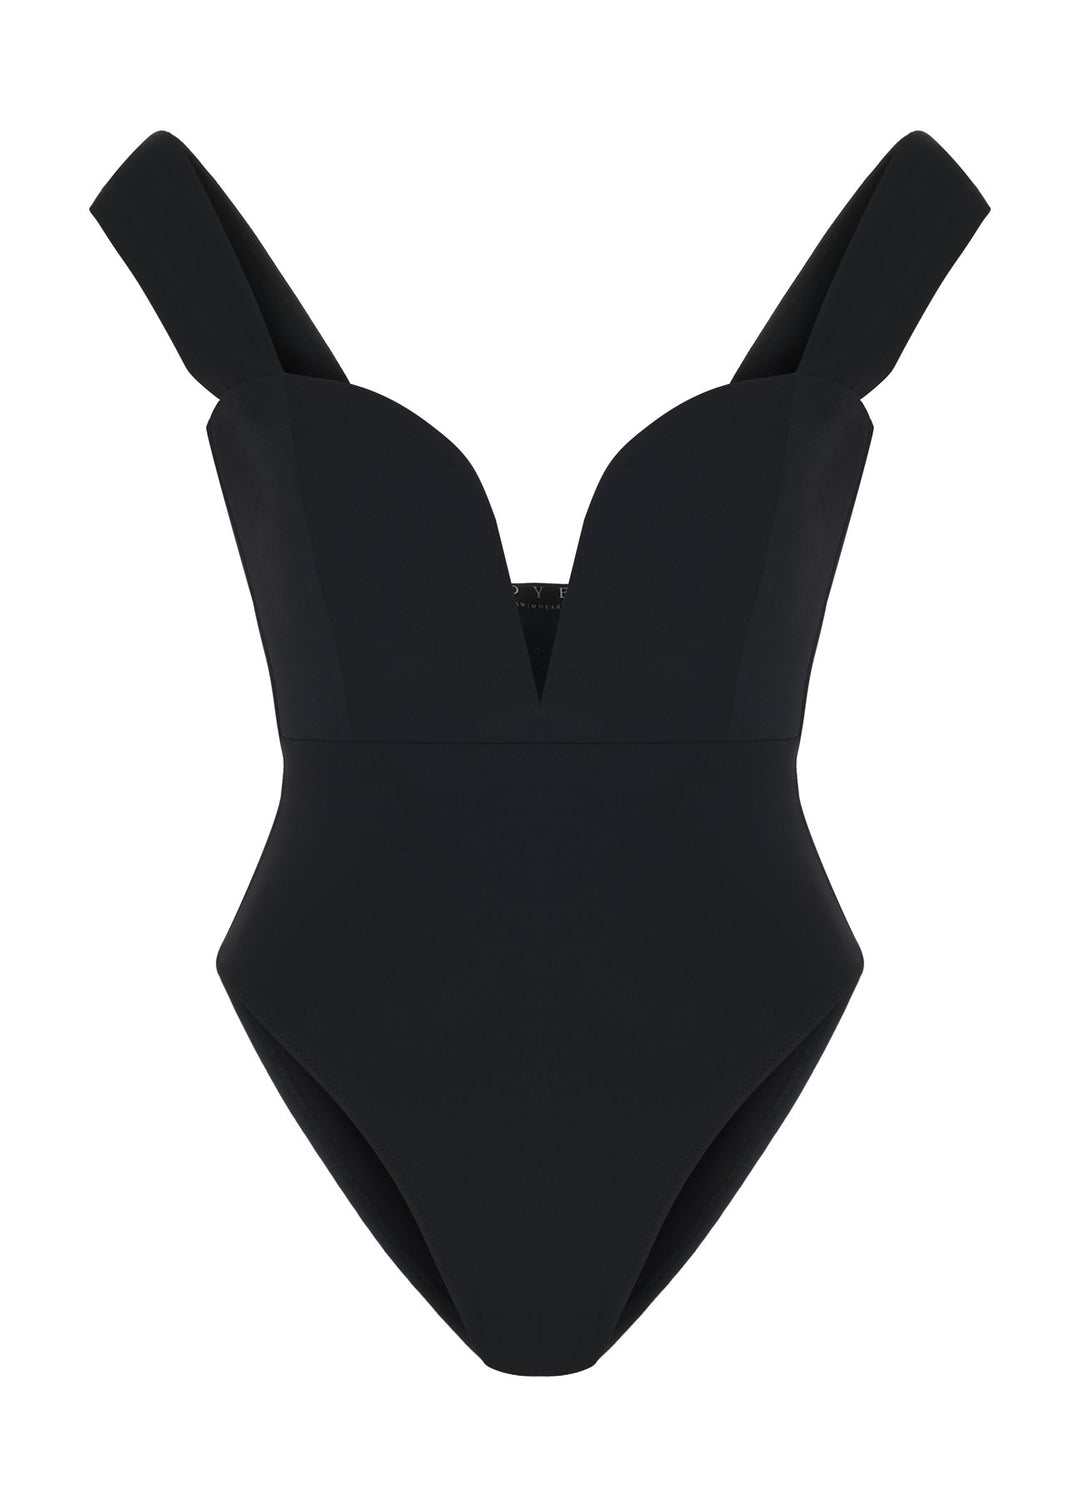 Oye Swimwear Venus One Piece Swimsuit in Black